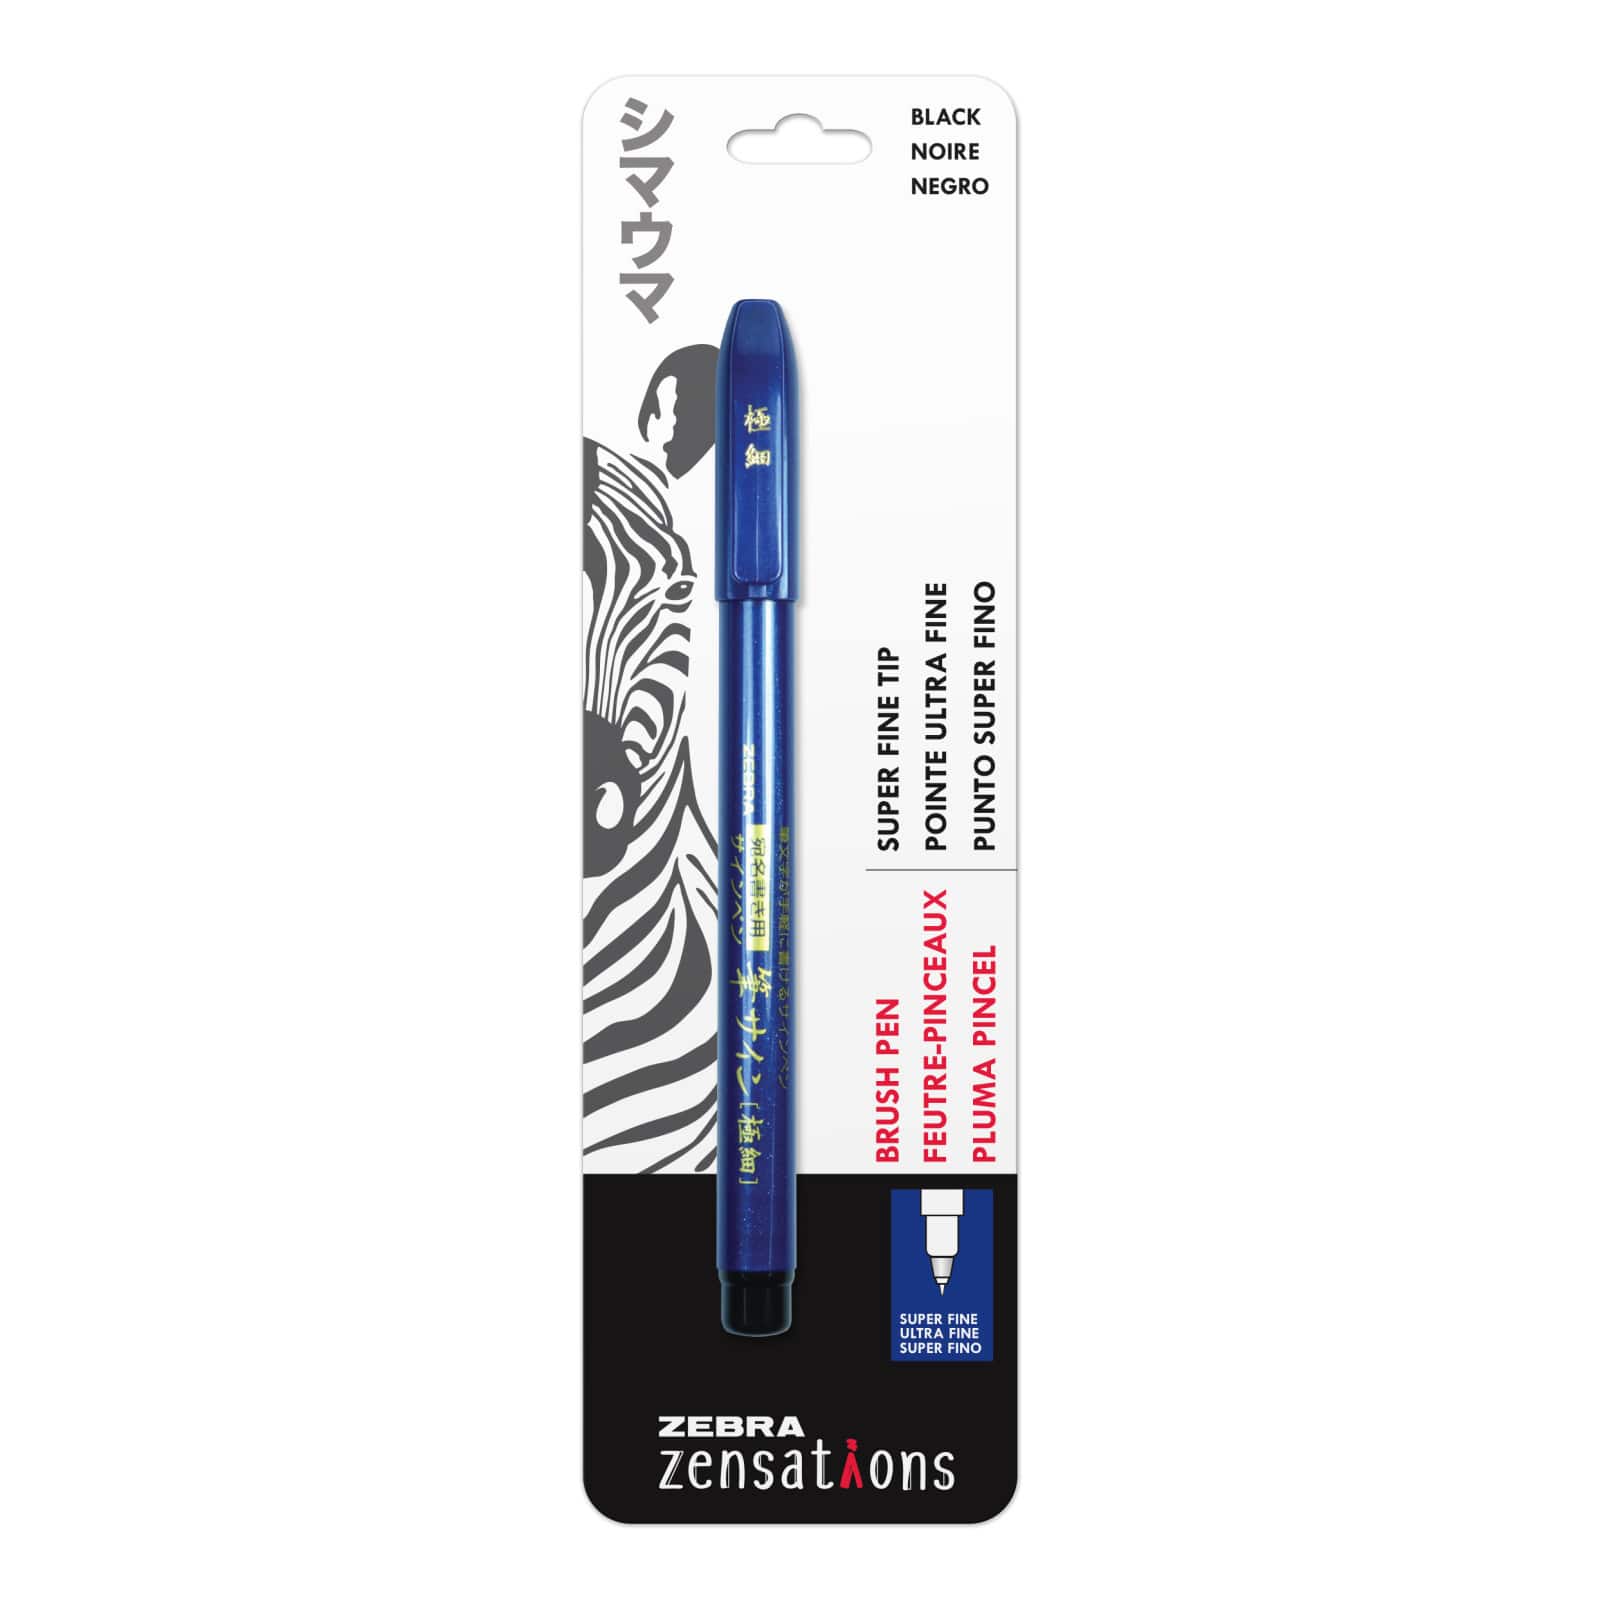 Black Brush Pen